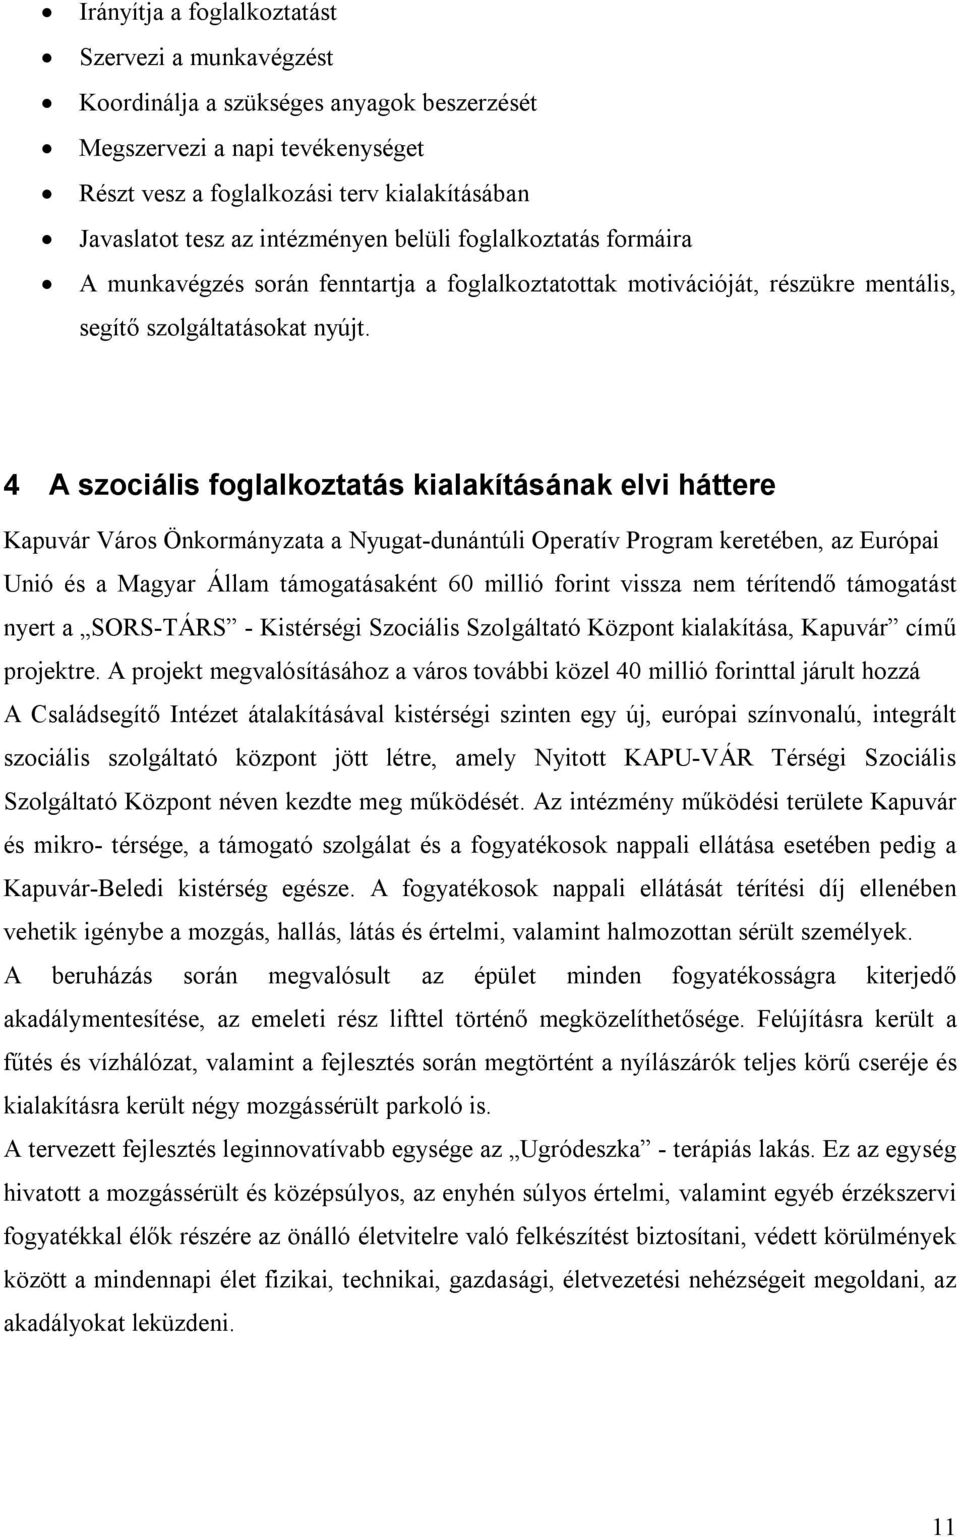 4 A szociális foglalkoztatás kialakításának elvi háttere Kapuvár Város Önkormányzata a Nyugat-dunántúli Operatív Program keretében, az Európai Unió és a Magyar Állam támogatásaként 60 millió forint